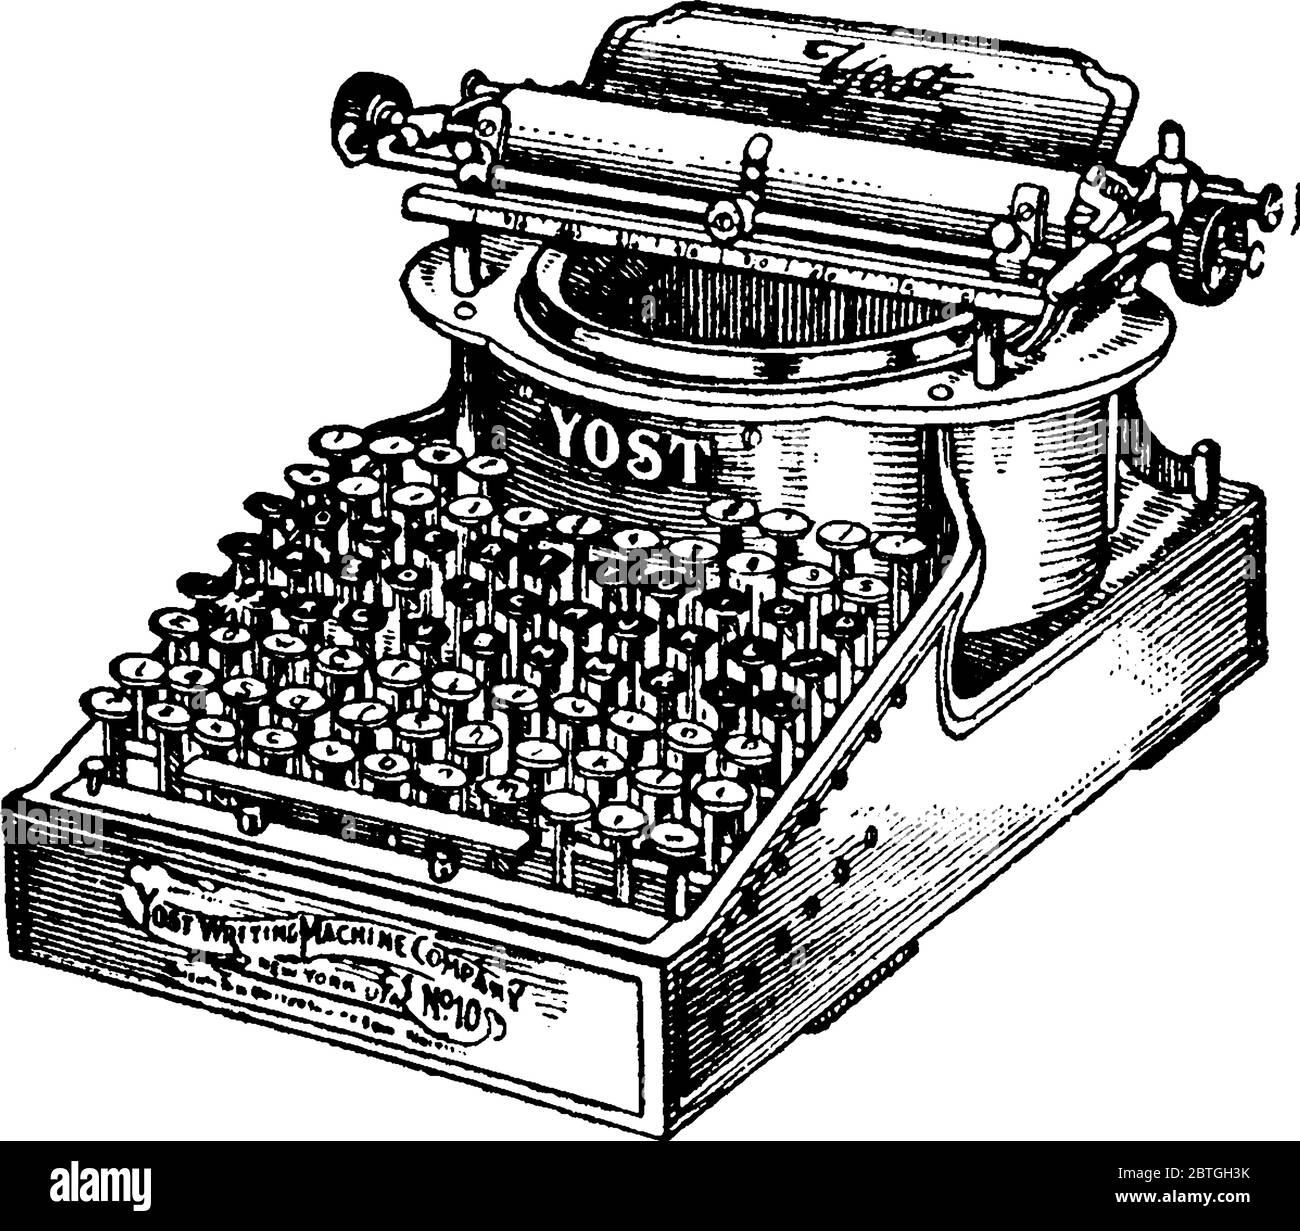 Figura che mostra la macchina da scrivere realizzata da yost writing machine Company, è utilizzato per scrivere caratteri simili a quelli prodotti da stampanti, linea vintage Illustrazione Vettoriale